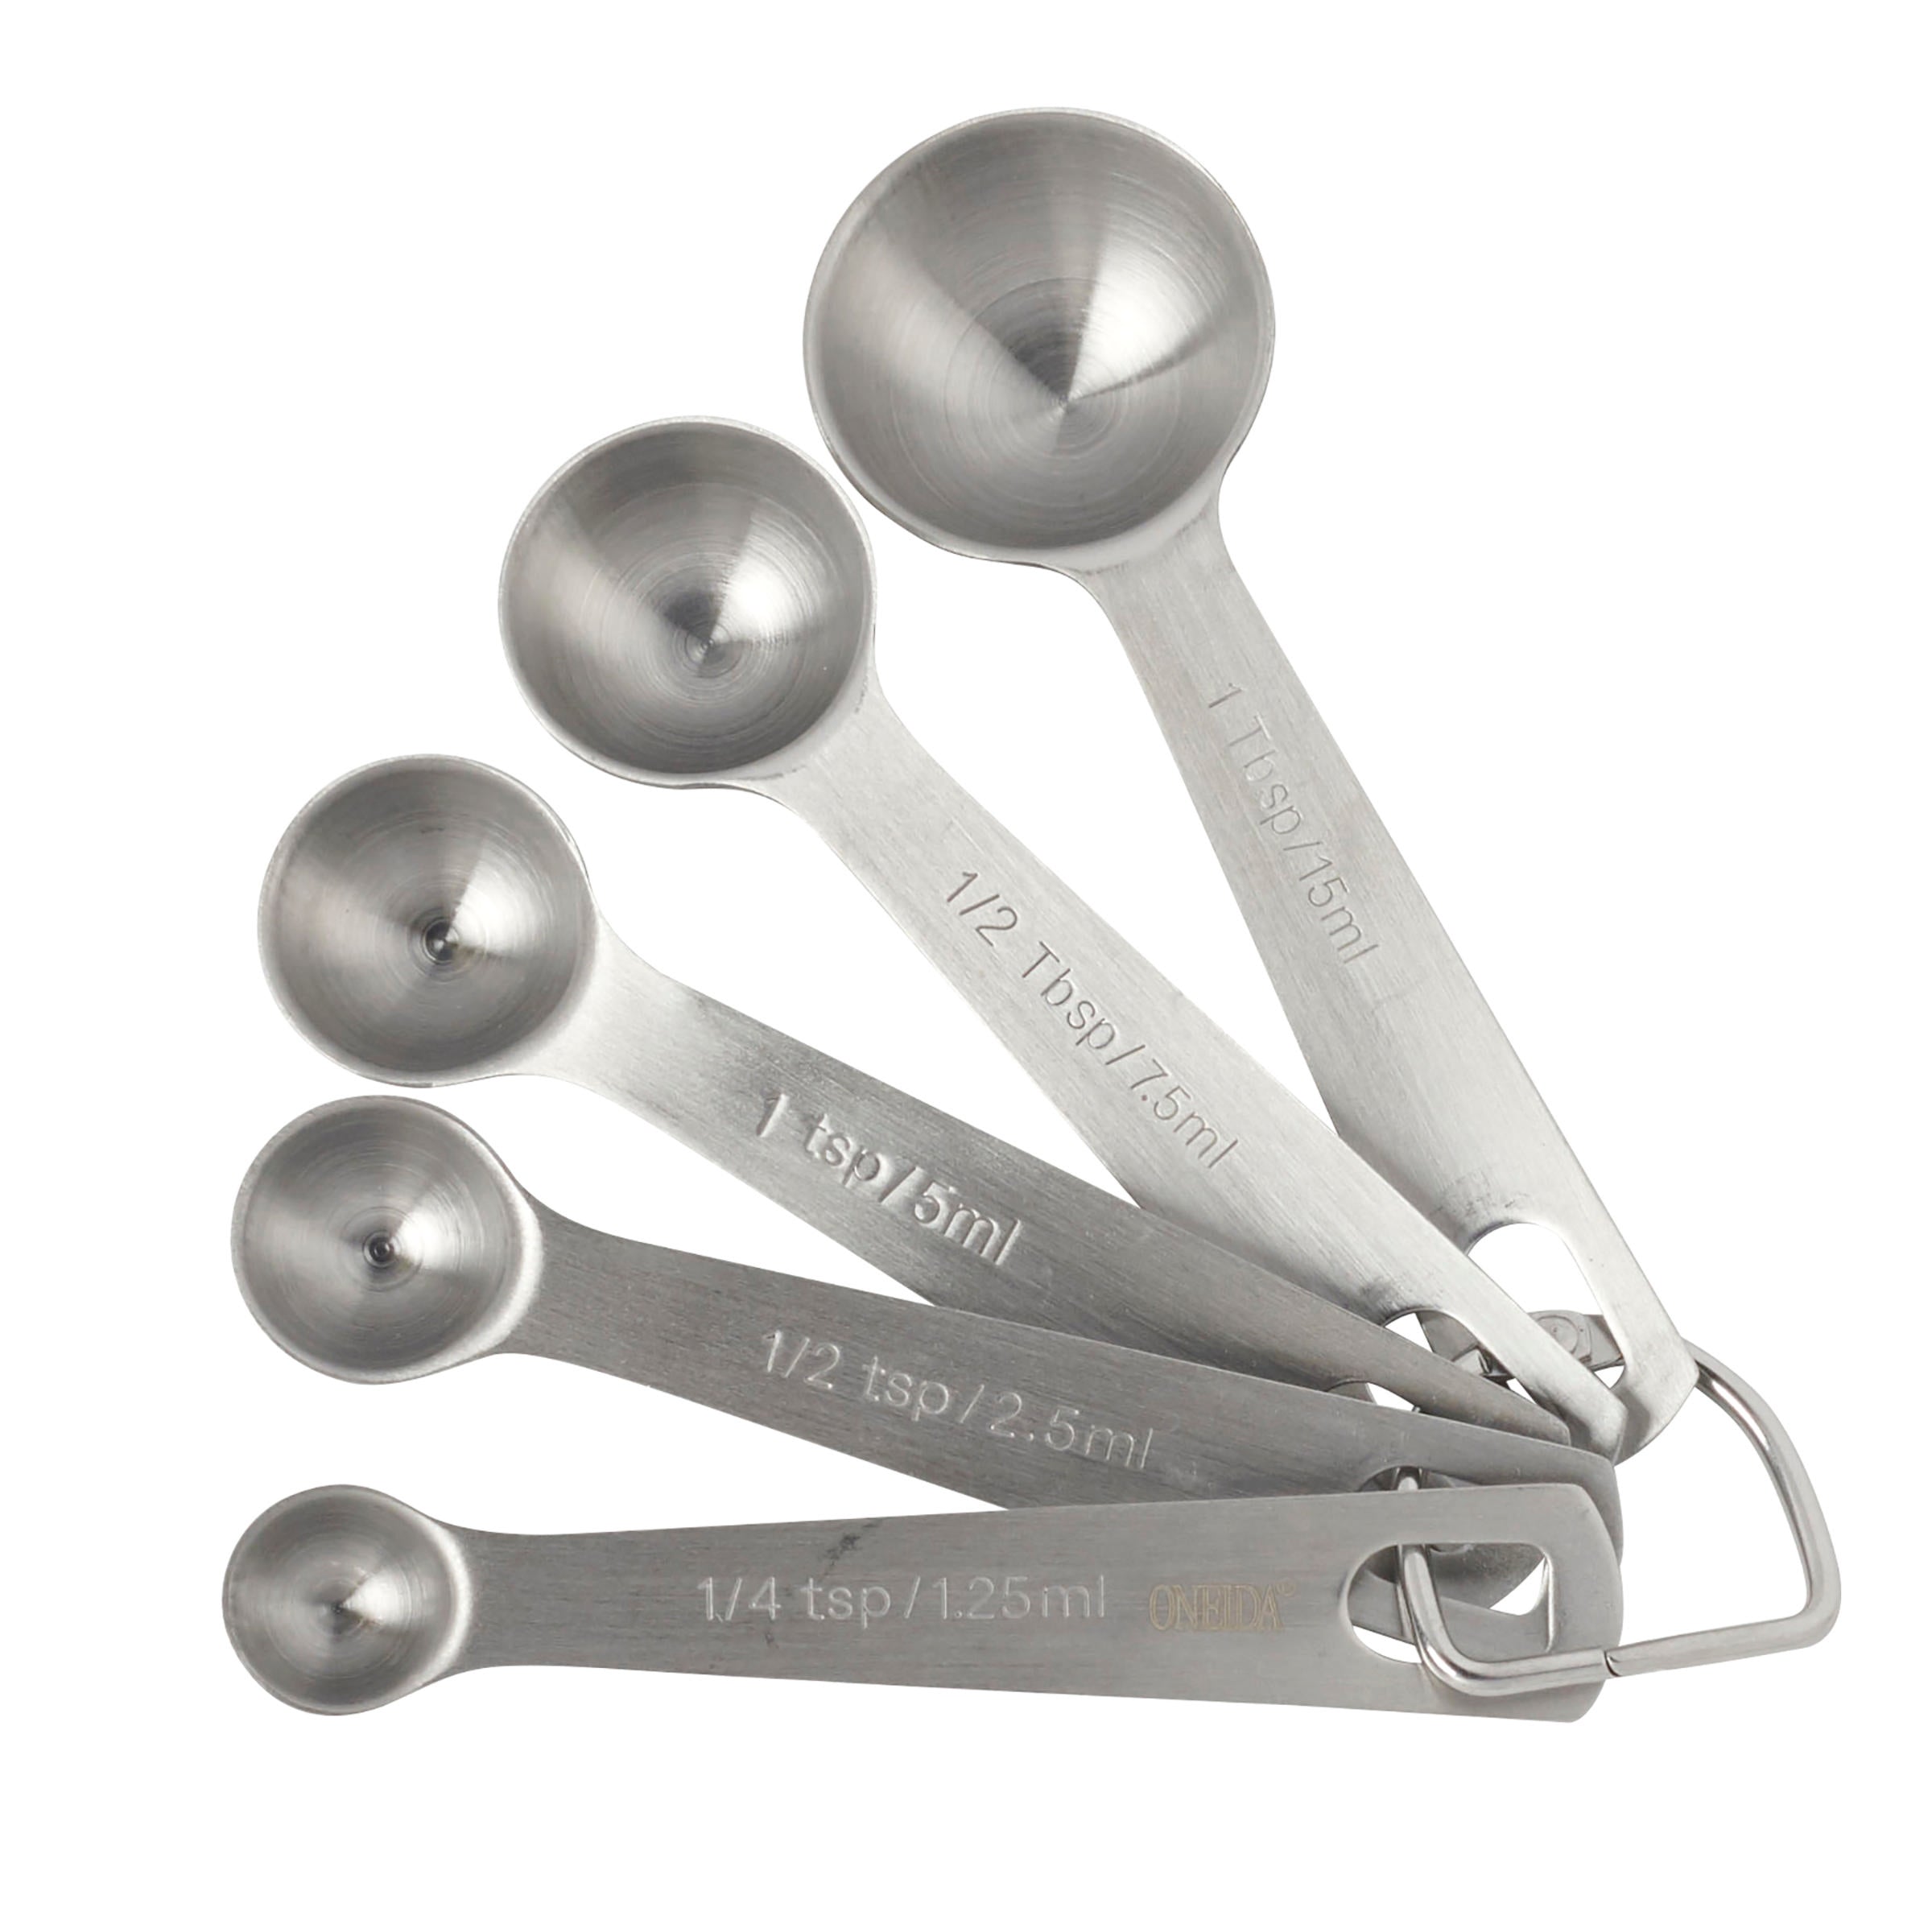 Buy Stainless Steel Measuring Spoons